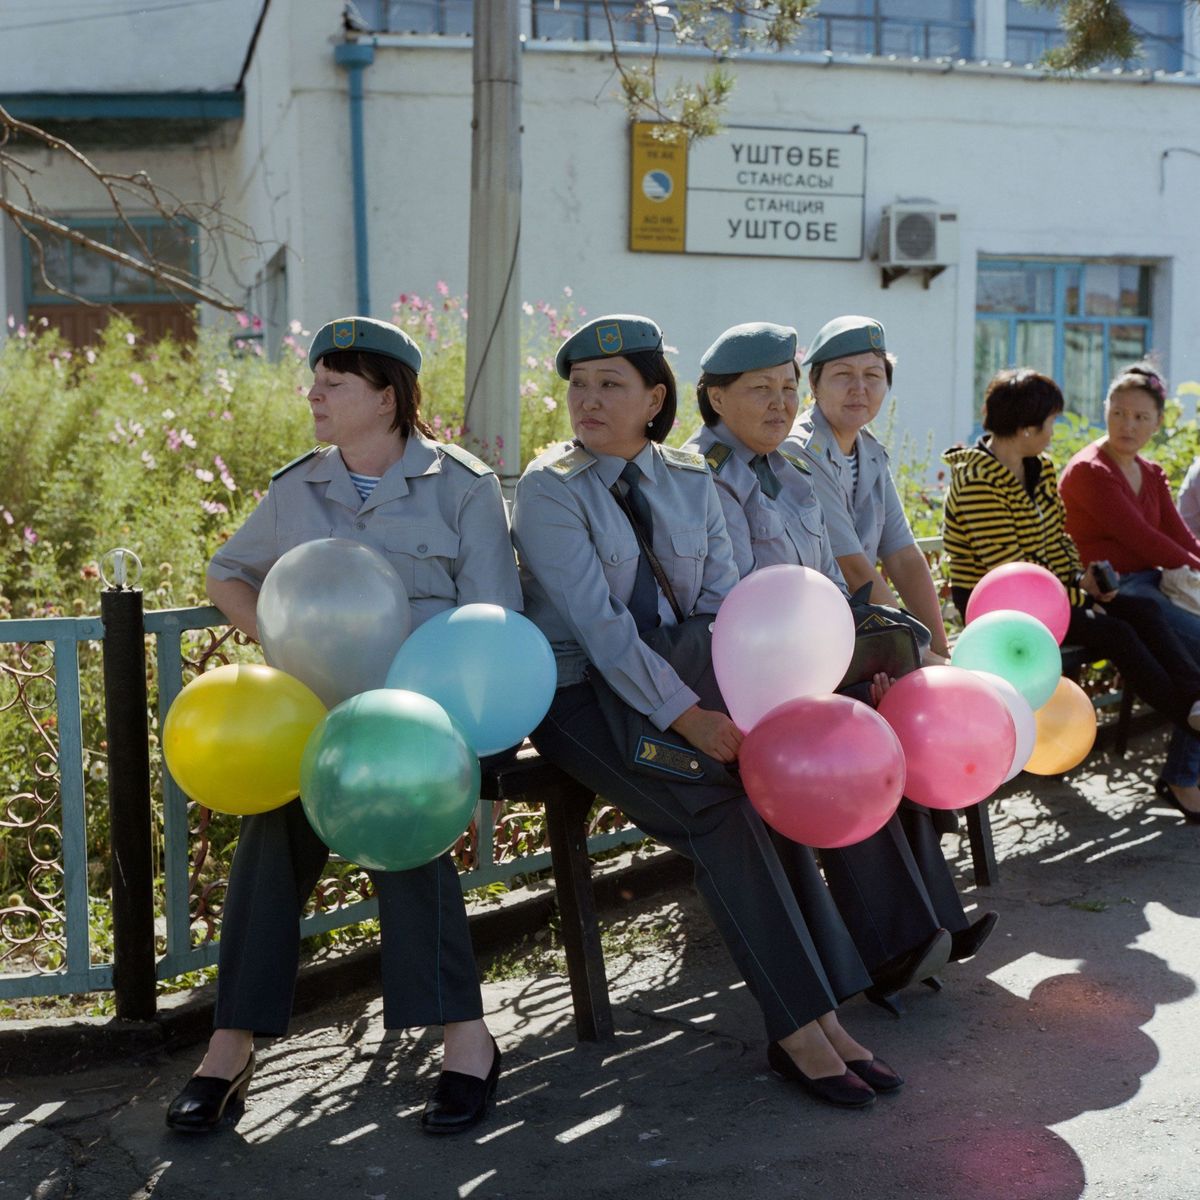 Vrouwelijke soldaten bekijken een militaire parade op een treinstation in het Kazachse Oesjtobe